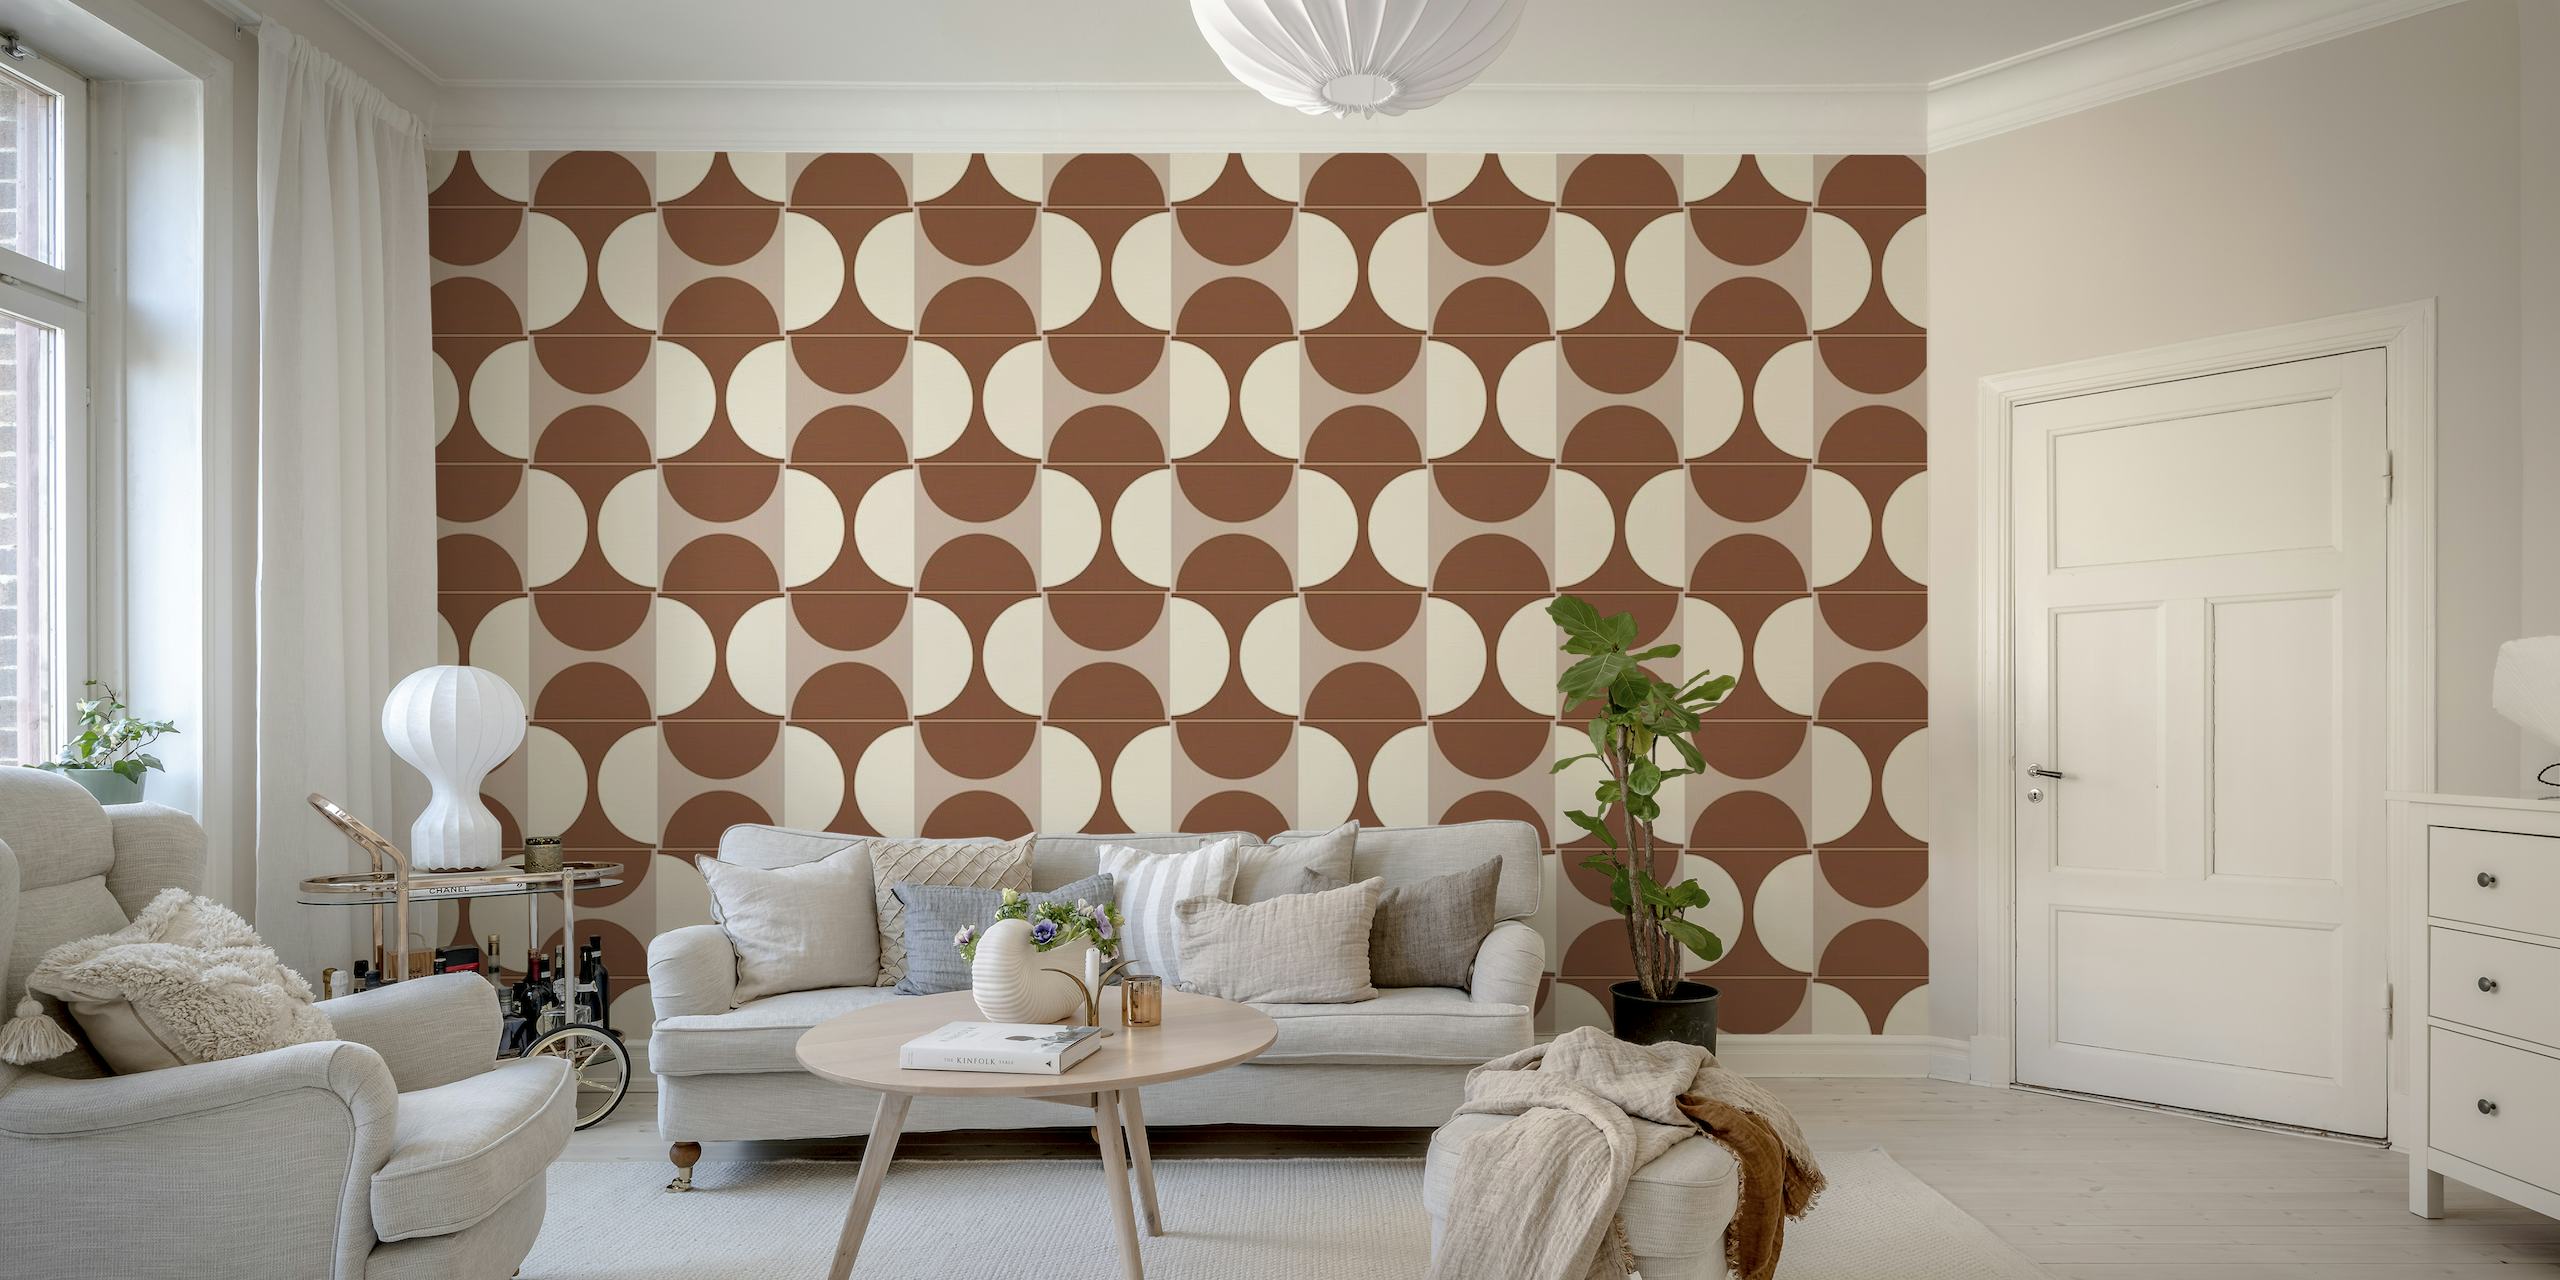 Cotto Tiles Cinnamon and Cream Combo wallpaper